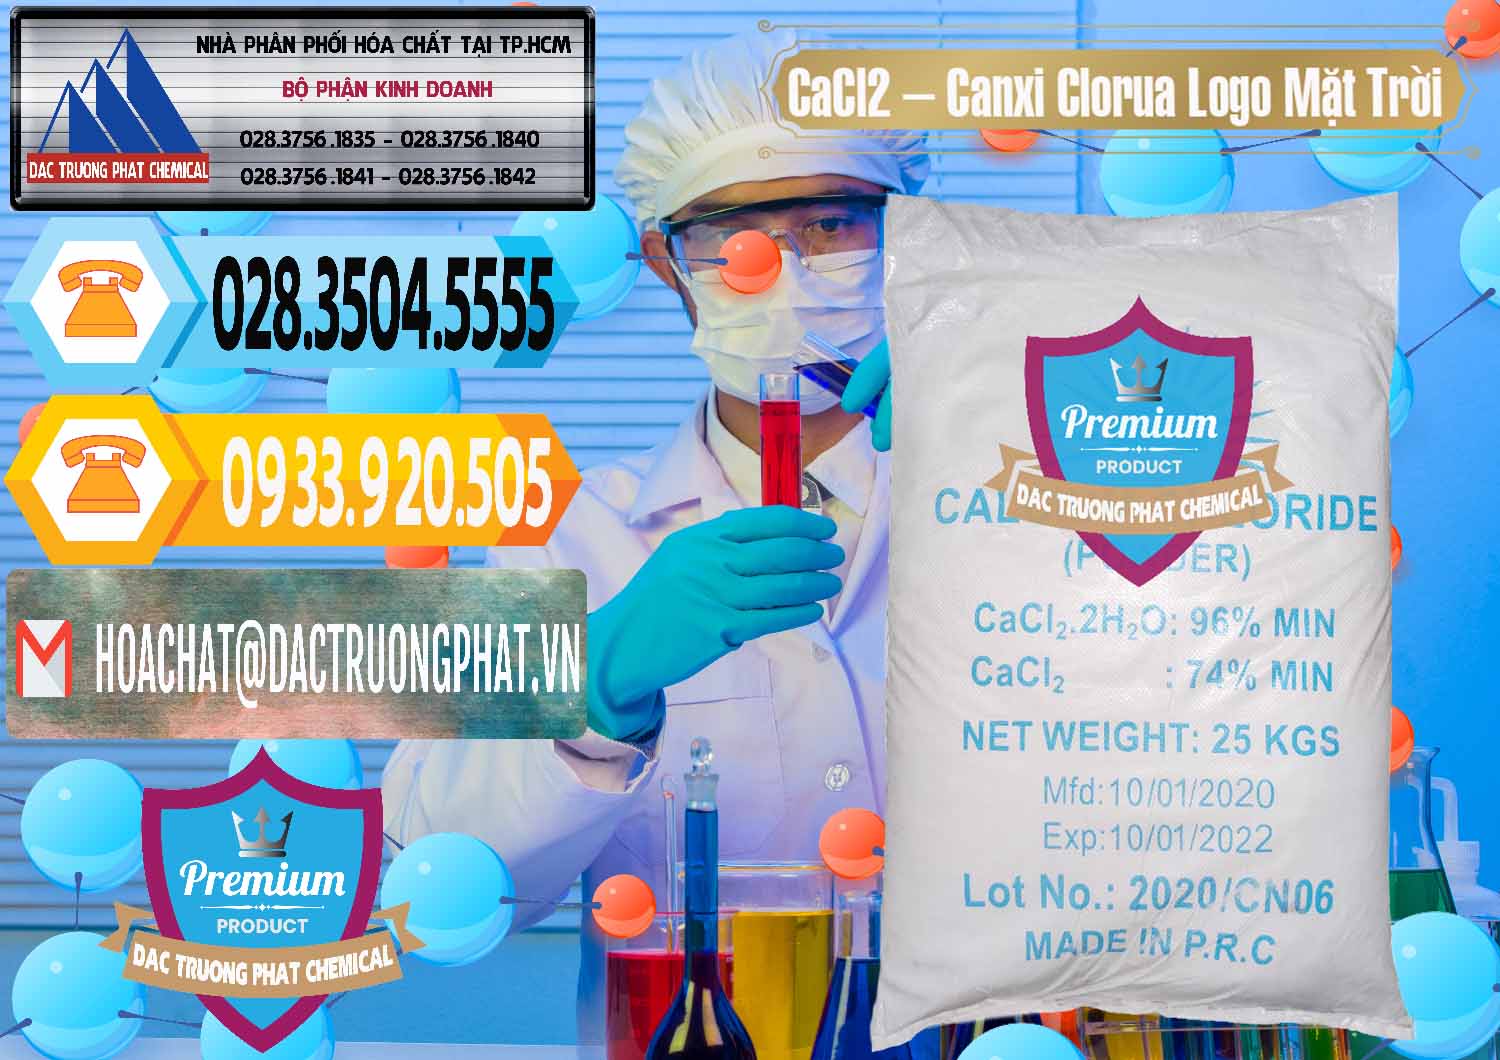 Nhà phân phối _ bán CaCl2 – Canxi Clorua 96% Logo Mặt Trời Trung Quốc China - 0041 - Công ty nhập khẩu và cung cấp hóa chất tại TP.HCM - hoachattayrua.net